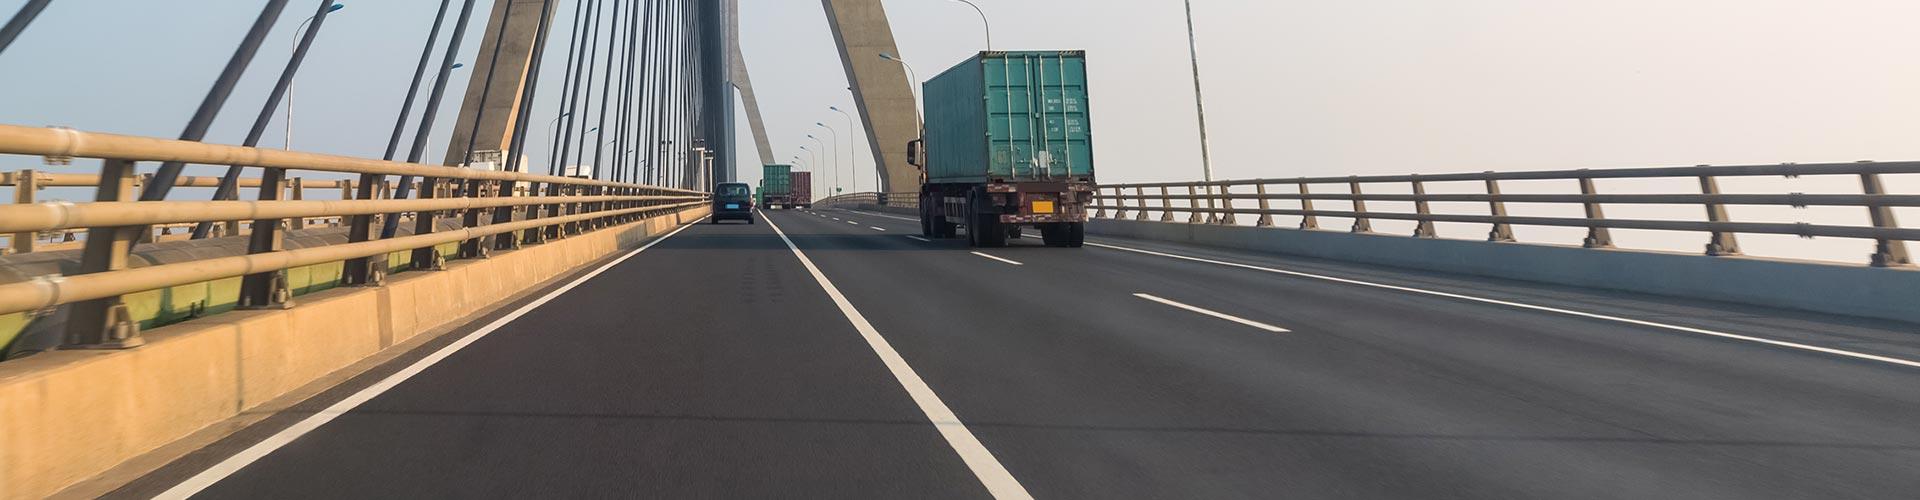 Seguro de Transportes - Carretera de una ciudad donde circulan camiones de transporte de mercancias junto a un puente